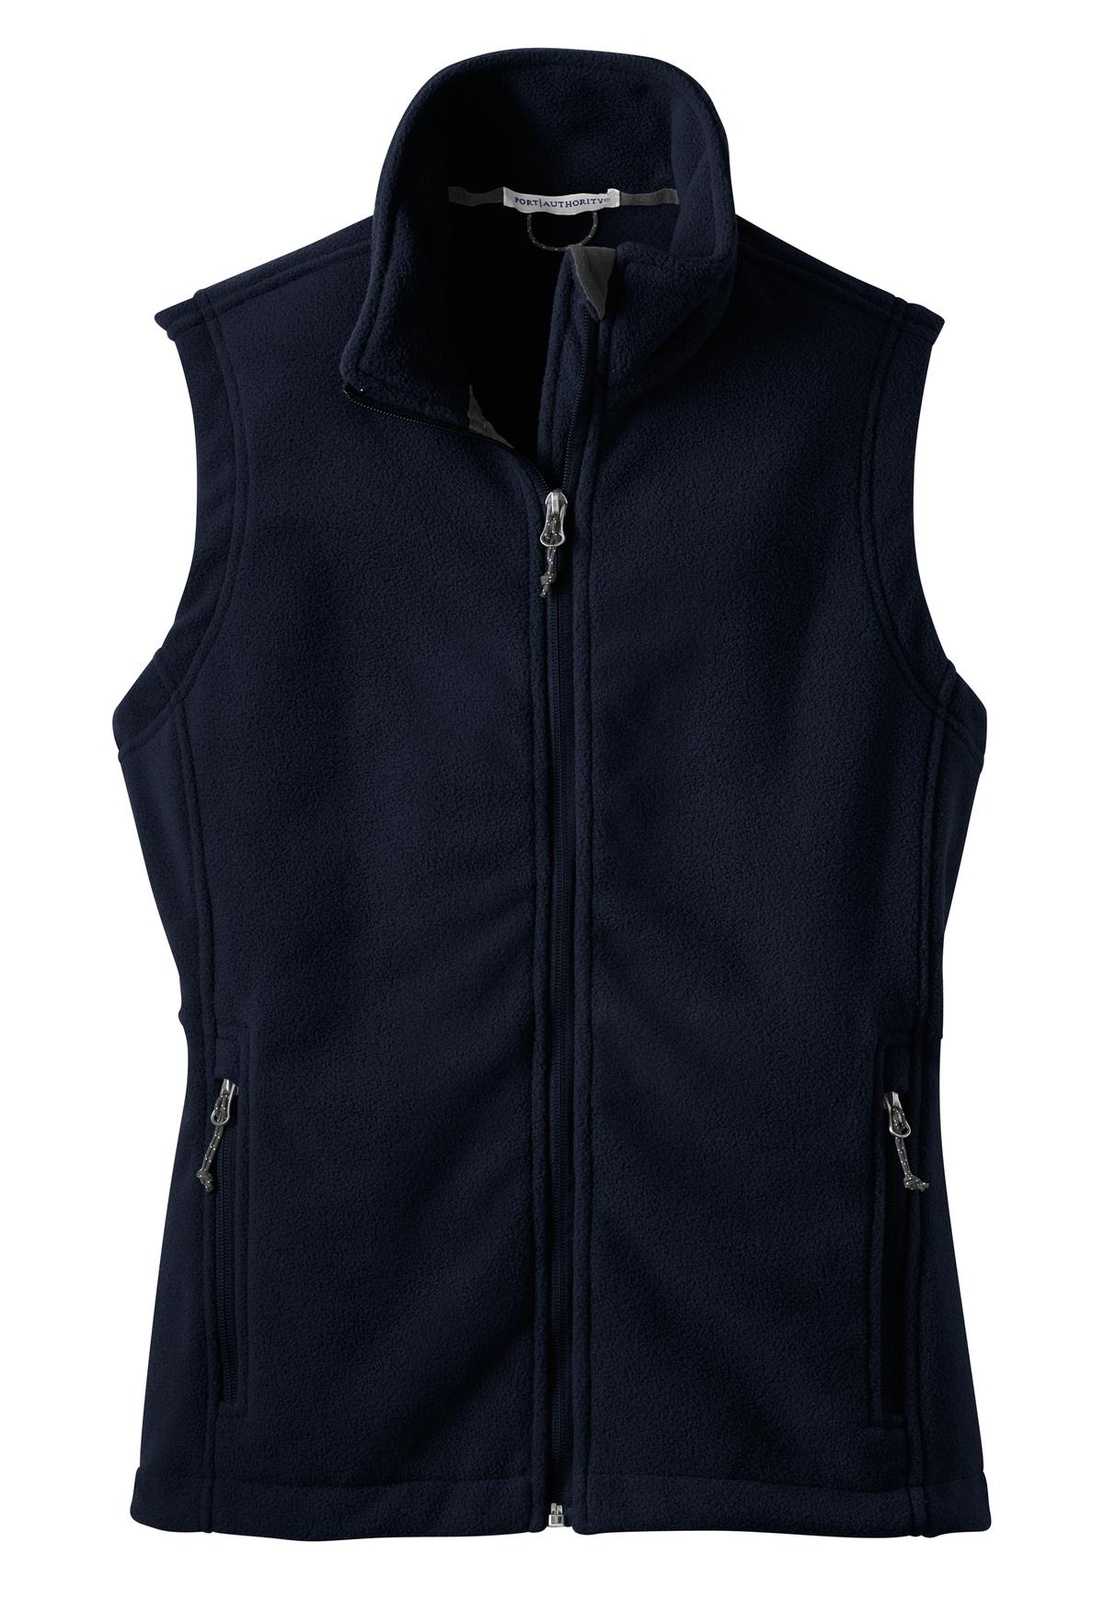 Port Authority L219 Ladies Value Fleece Vest - True Navy - HIT a Double - 5